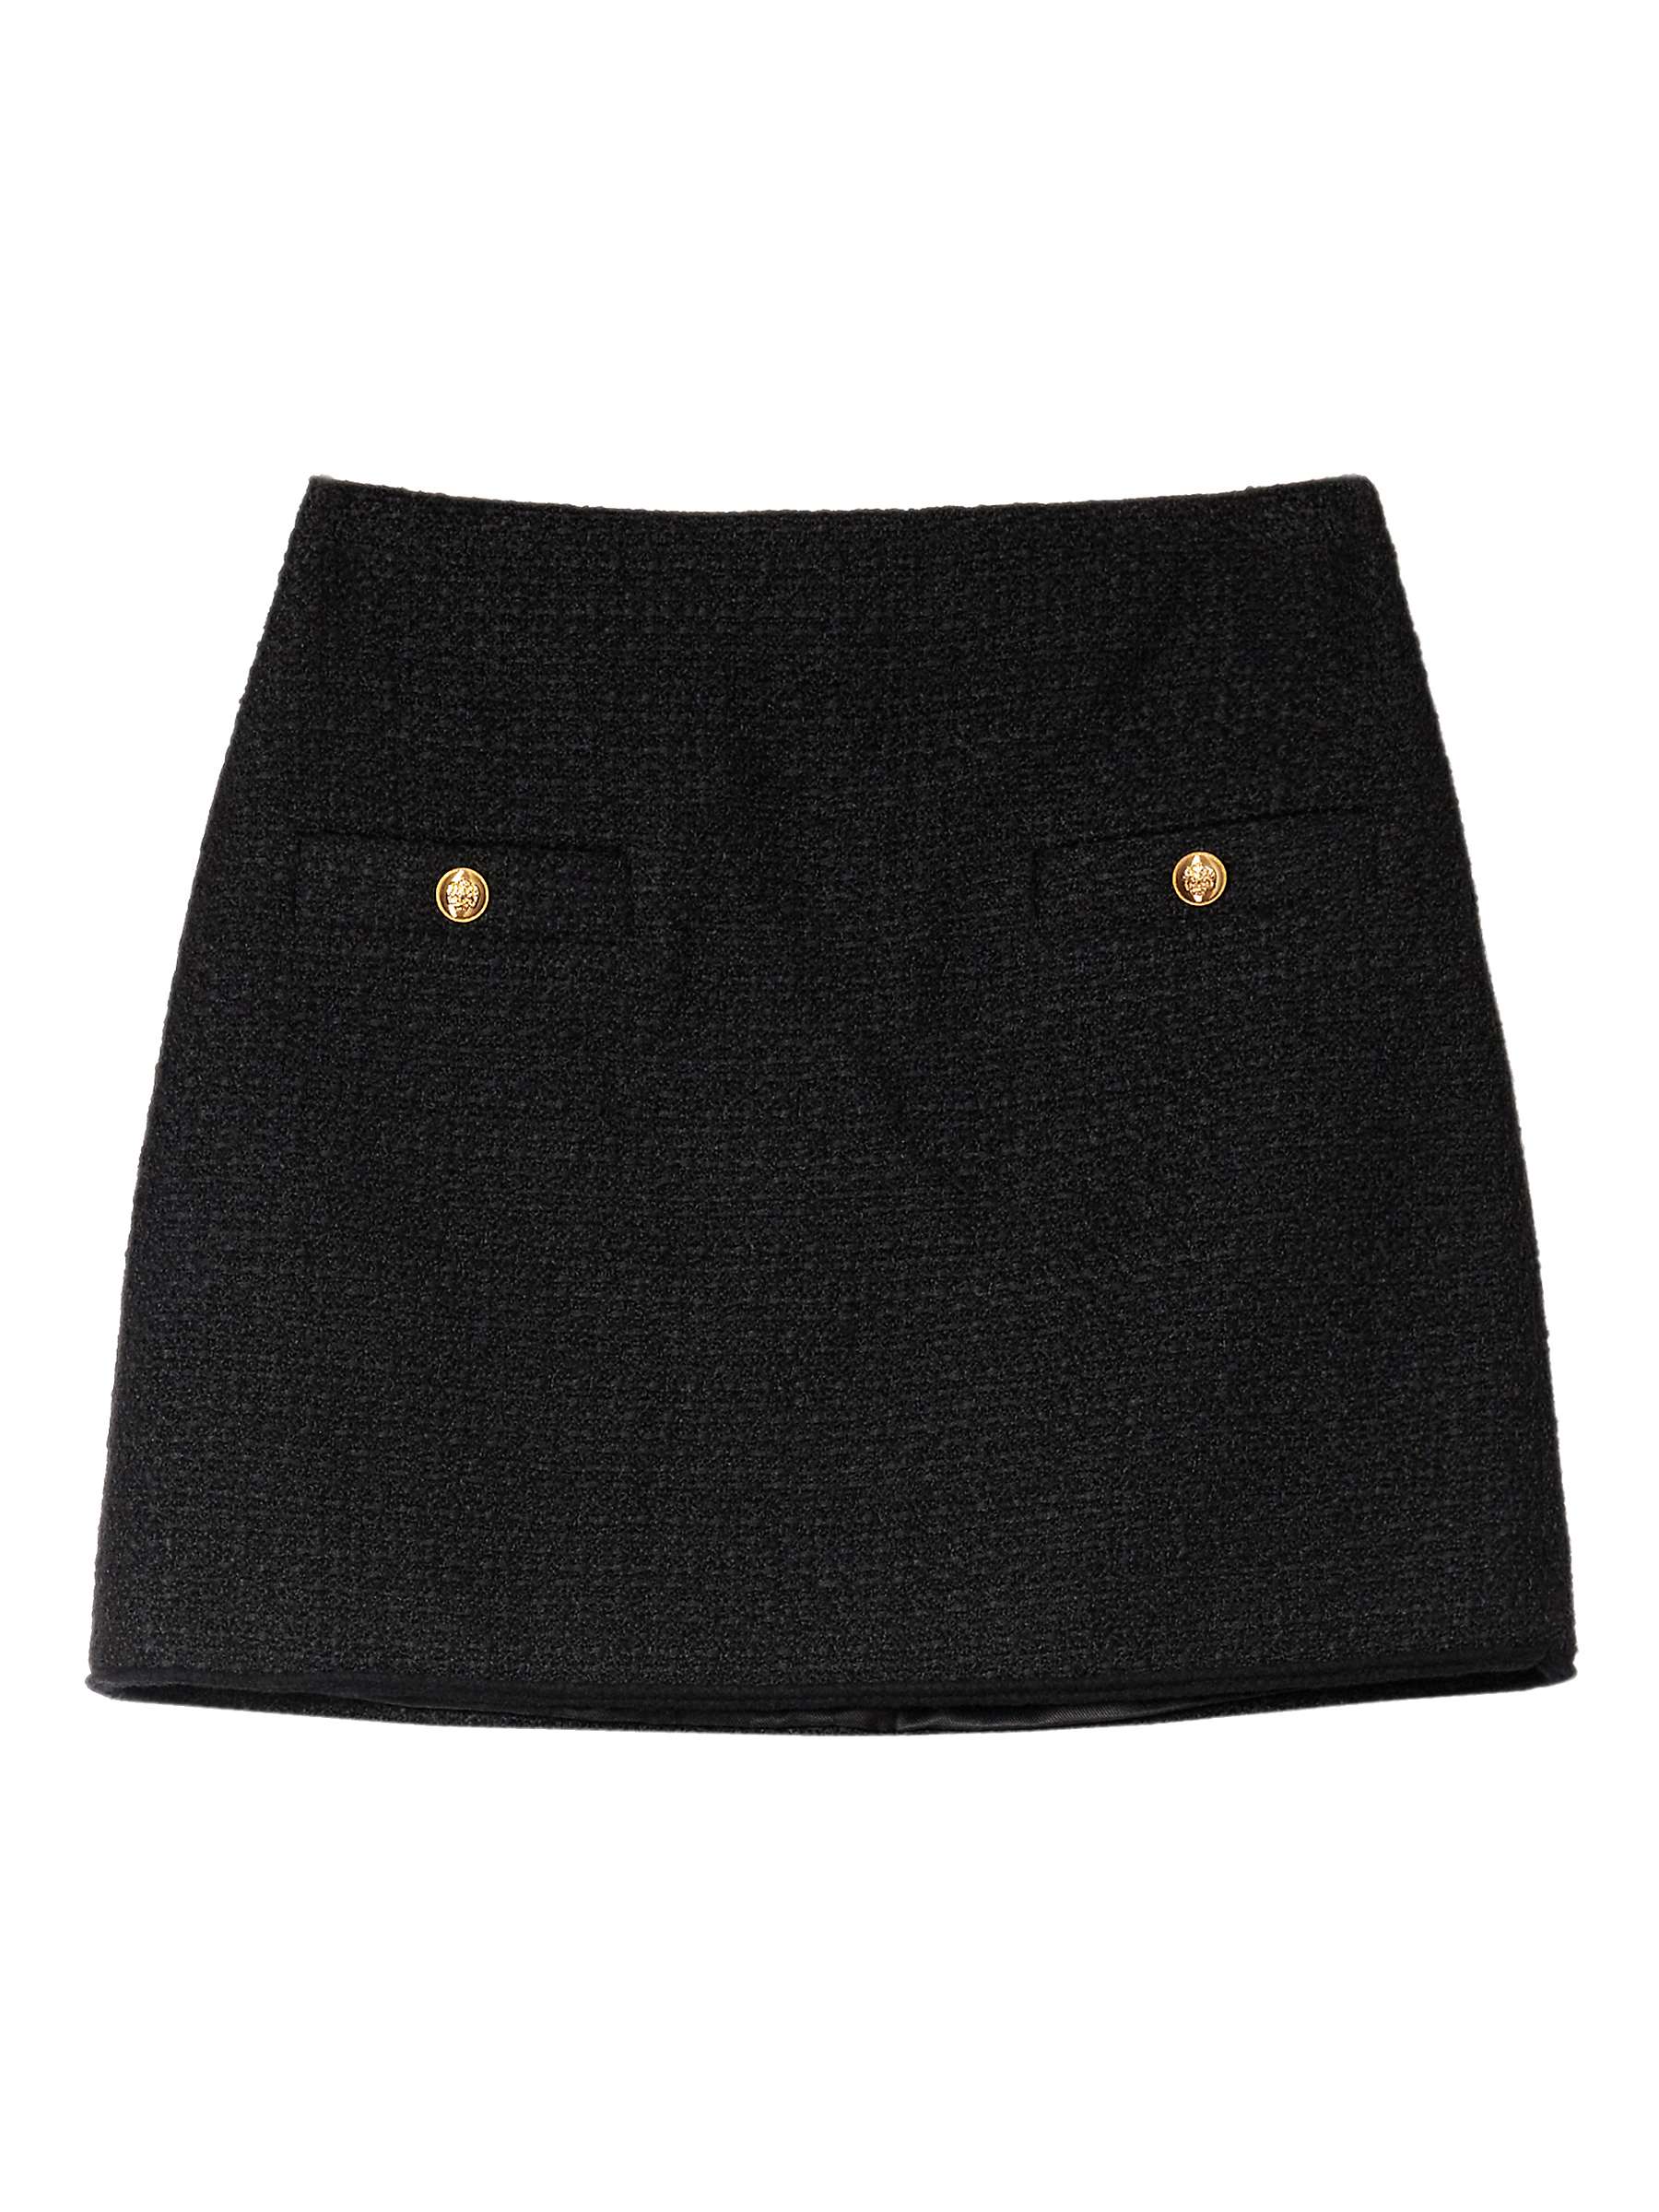 Buy Albaray Tweed Wool Blend Mini Skirt, Black Online at johnlewis.com